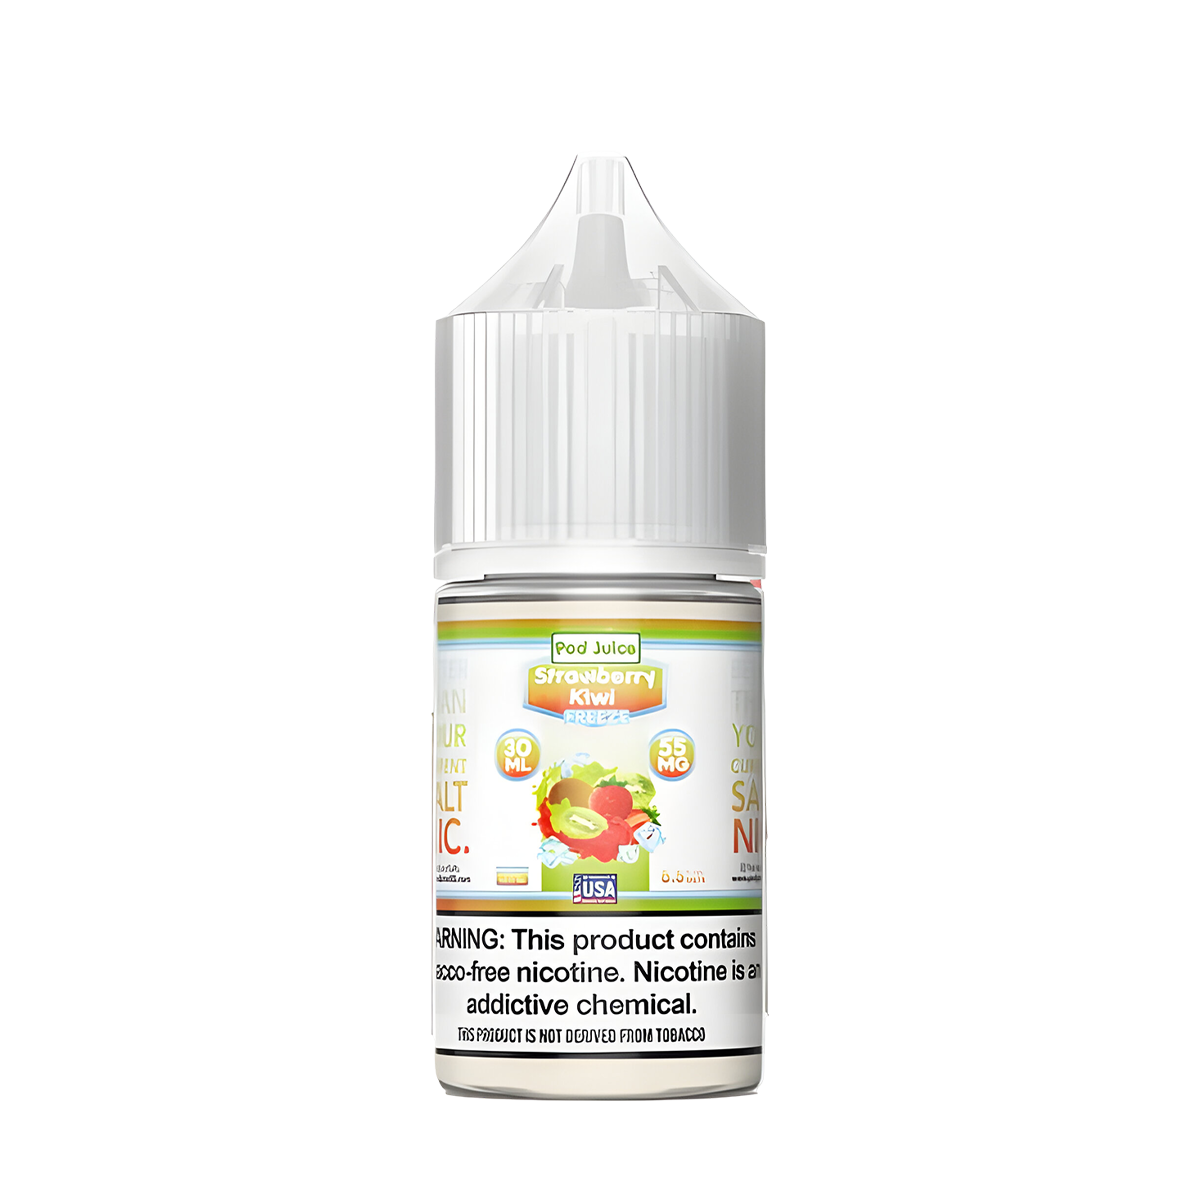 Pod Juice Salt Nicotine Vape Juice 35 Mg 30 Ml Strawberry Kiwi